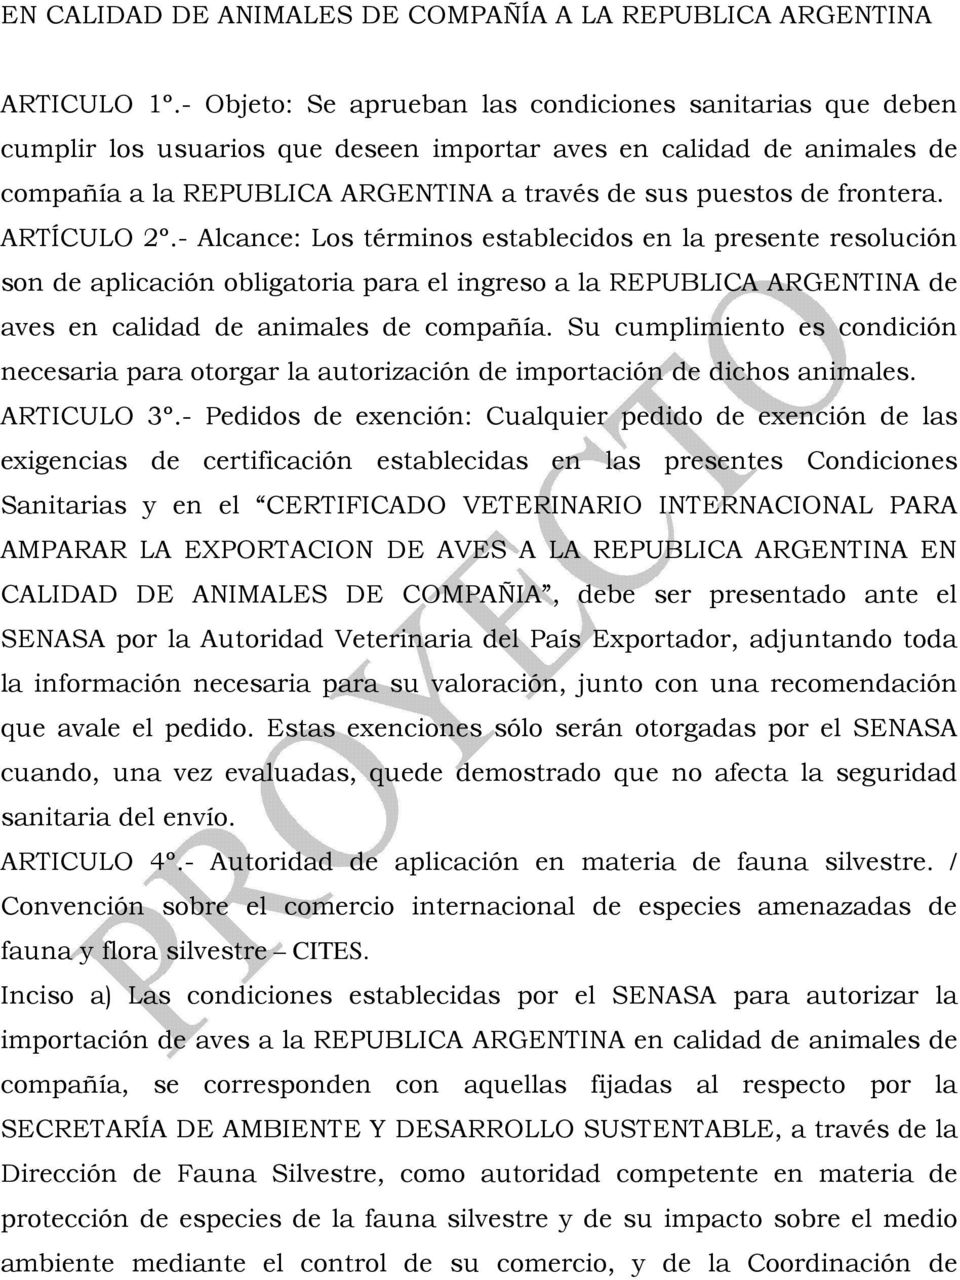 frontera. ARTÍCULO 2º.- Alcance: Los términos establecidos en la presente resolución son de aplicación obligatoria para el ingreso a la REPUBLICA ARGENTINA de aves en calidad de animales de compañía.